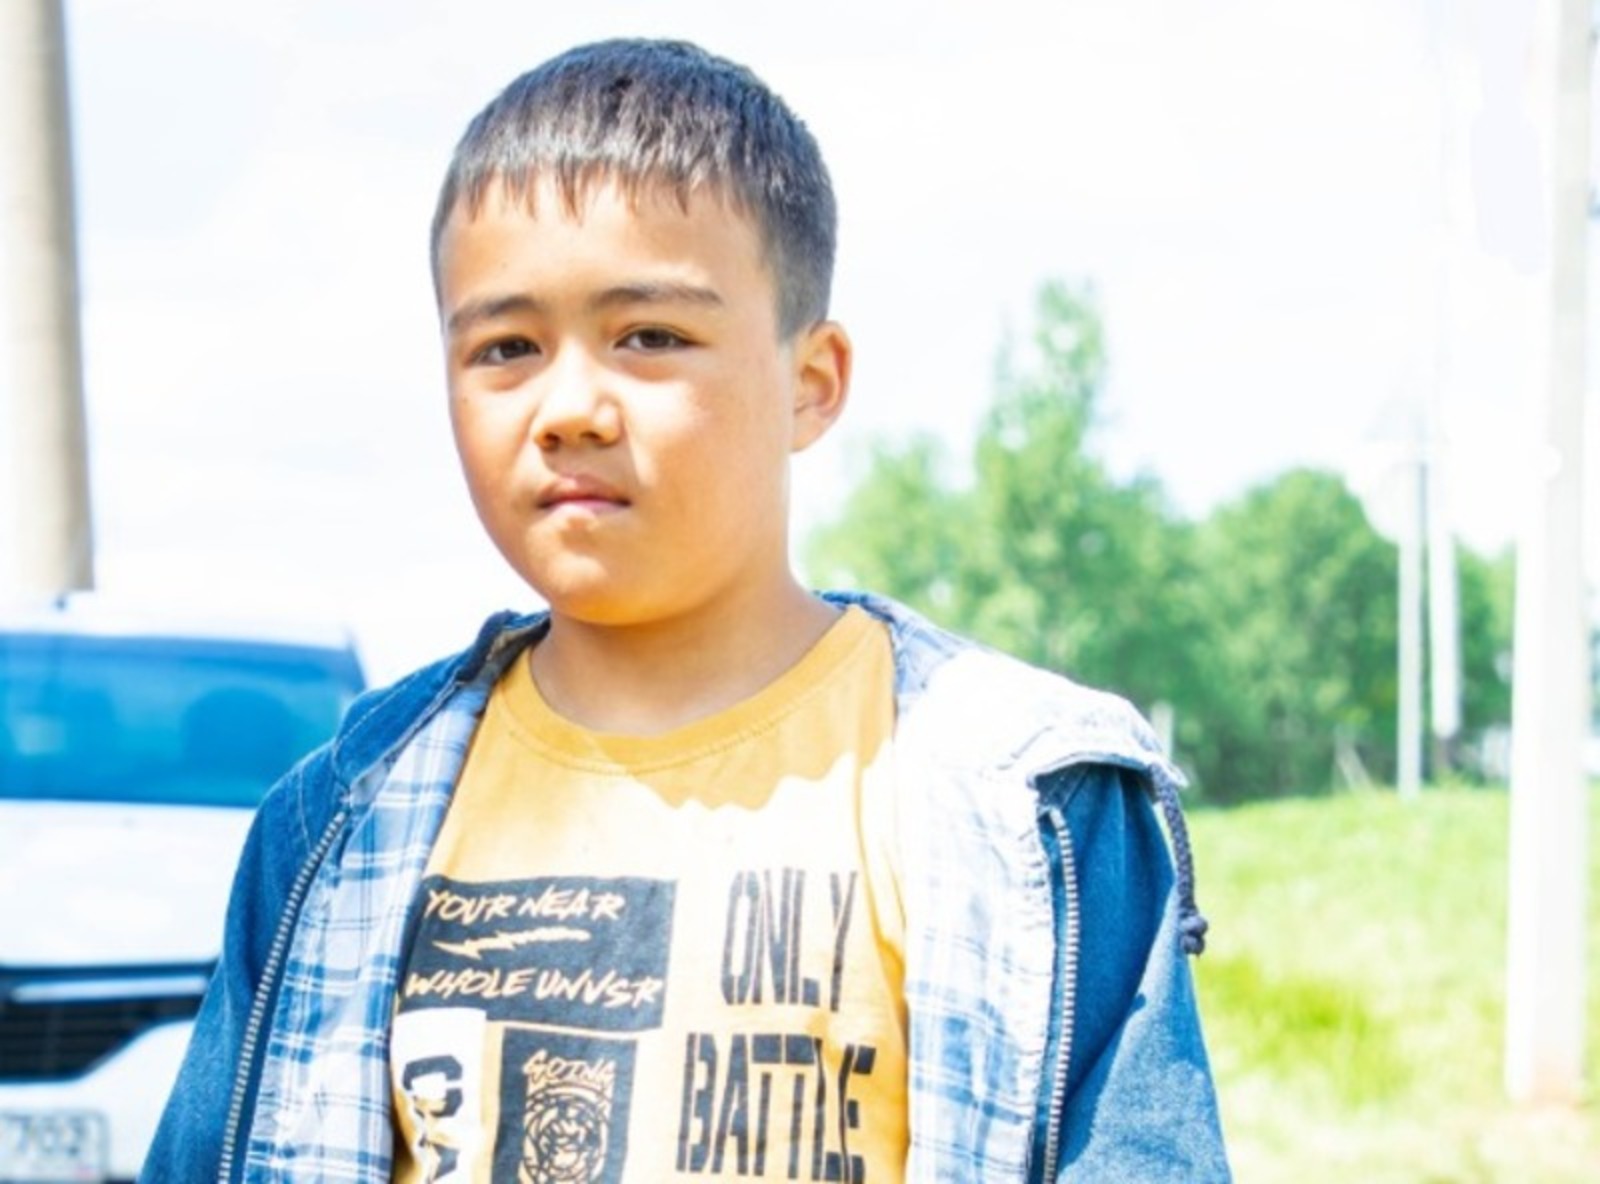 В Башкирии 12-летний мальчик на реке Усолка спас две человеческие жизни